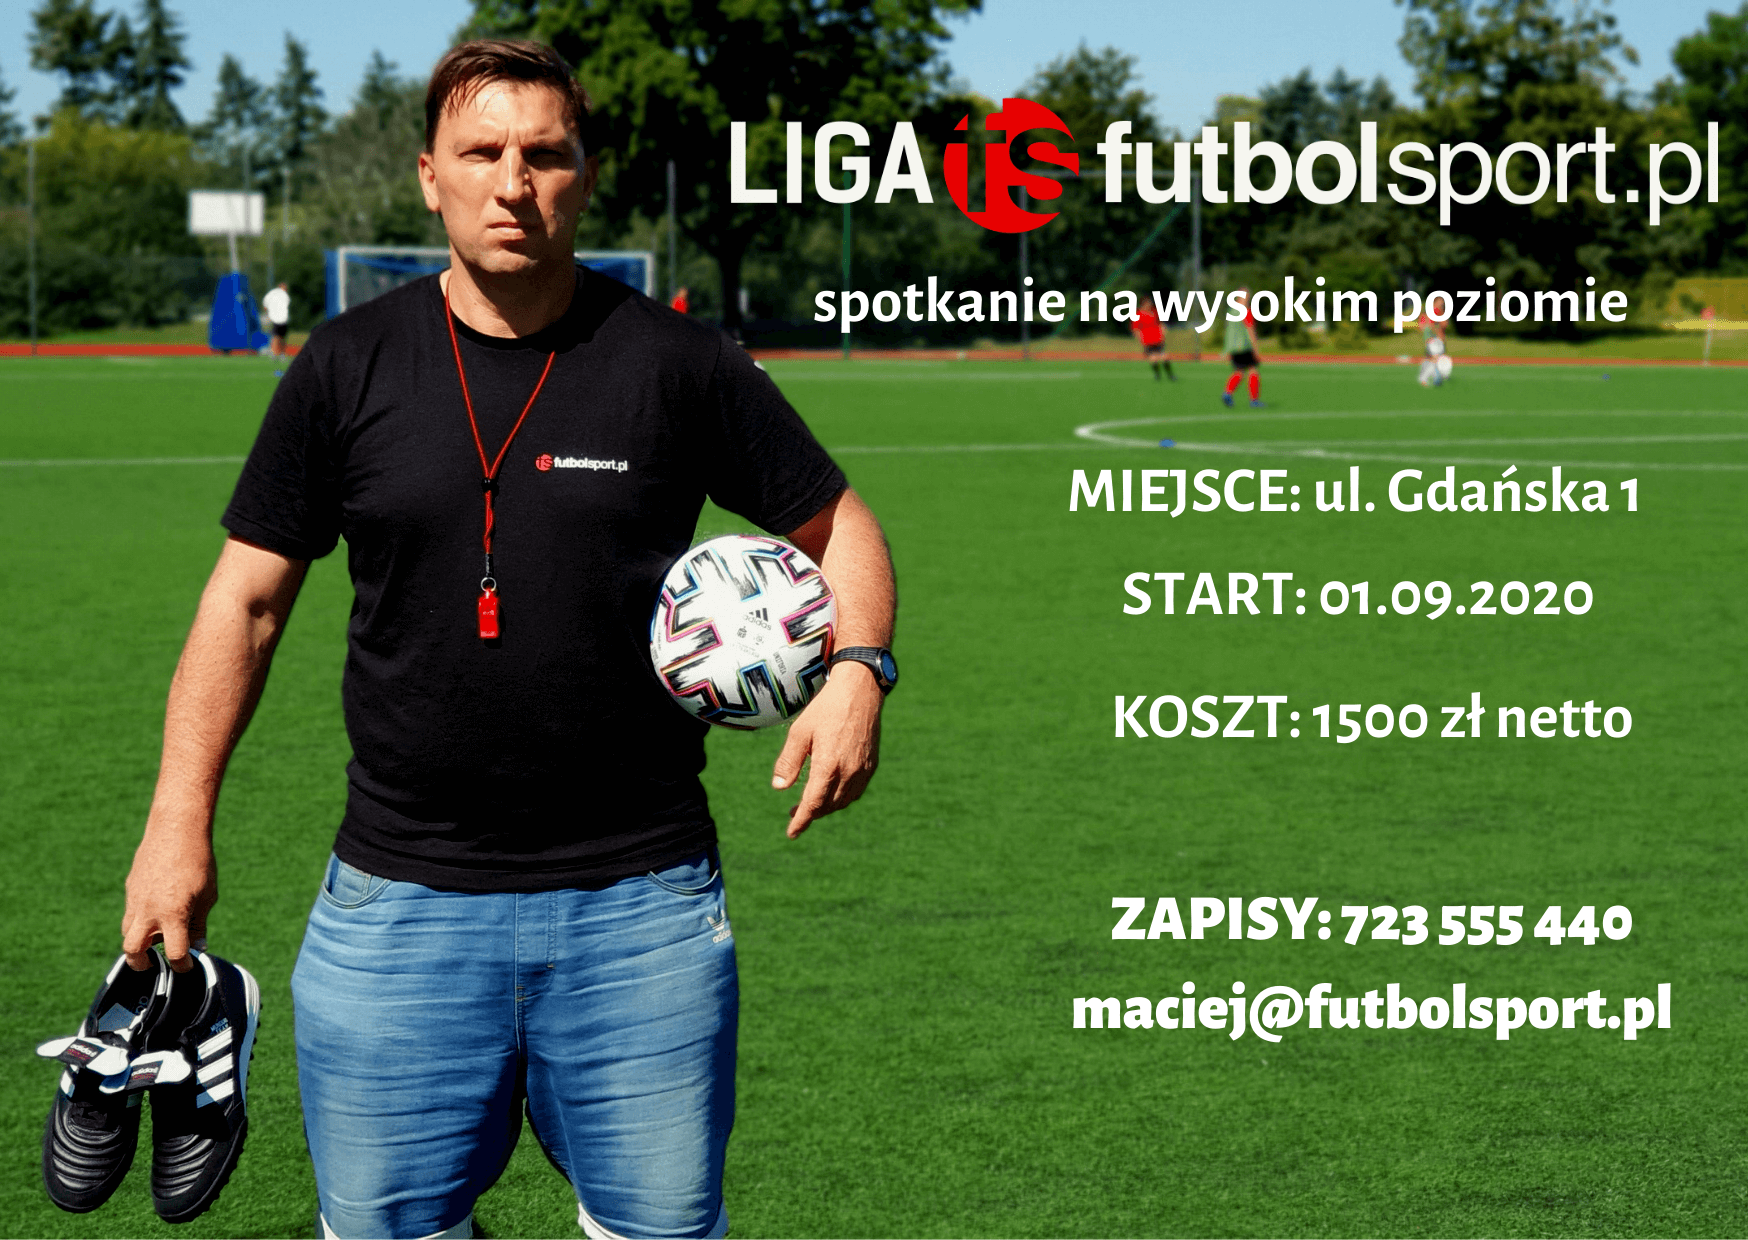 Ruszamy z zapisami do Ligi futbolsport.pl sezon Jesień 2020!